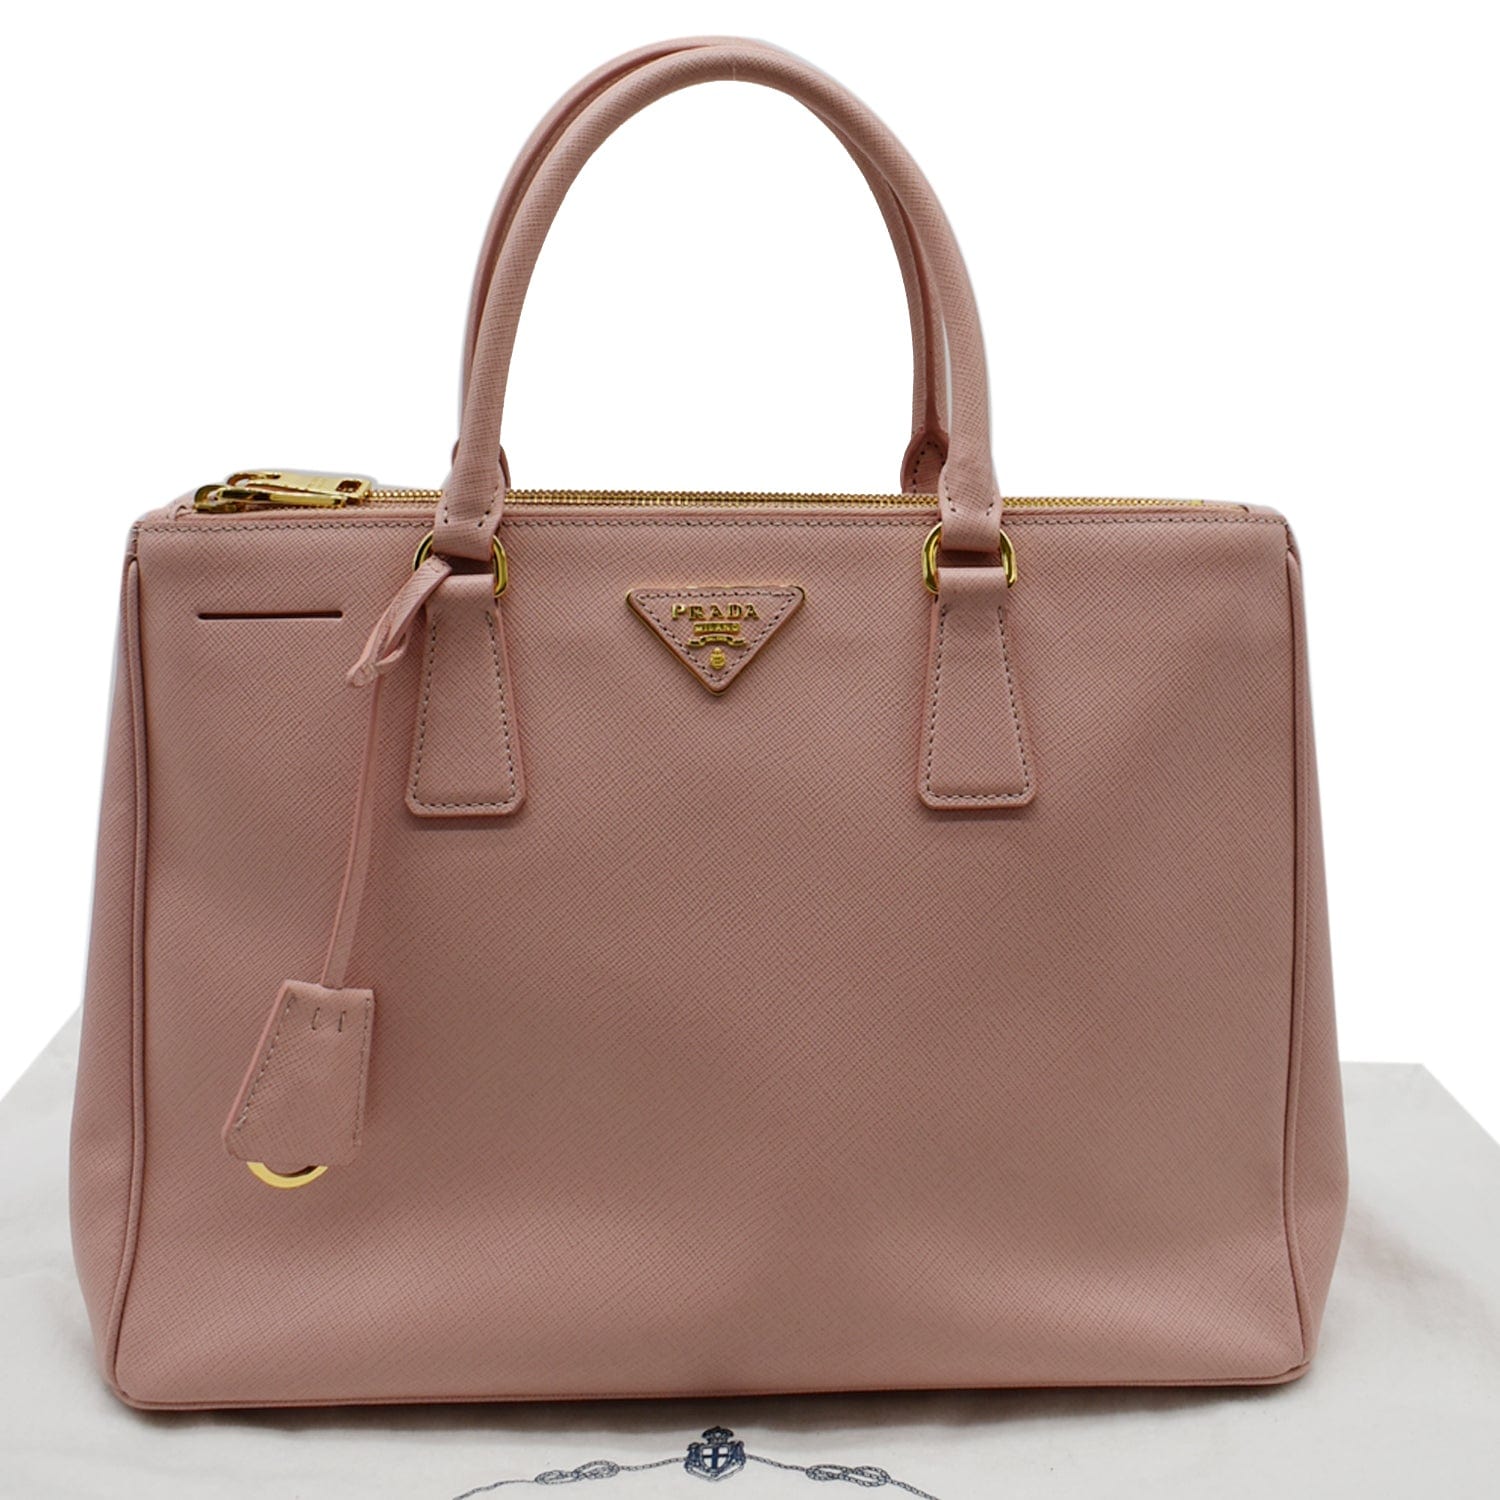 Prada Galleria Saffiano Lux Leather Medium Tote Bag